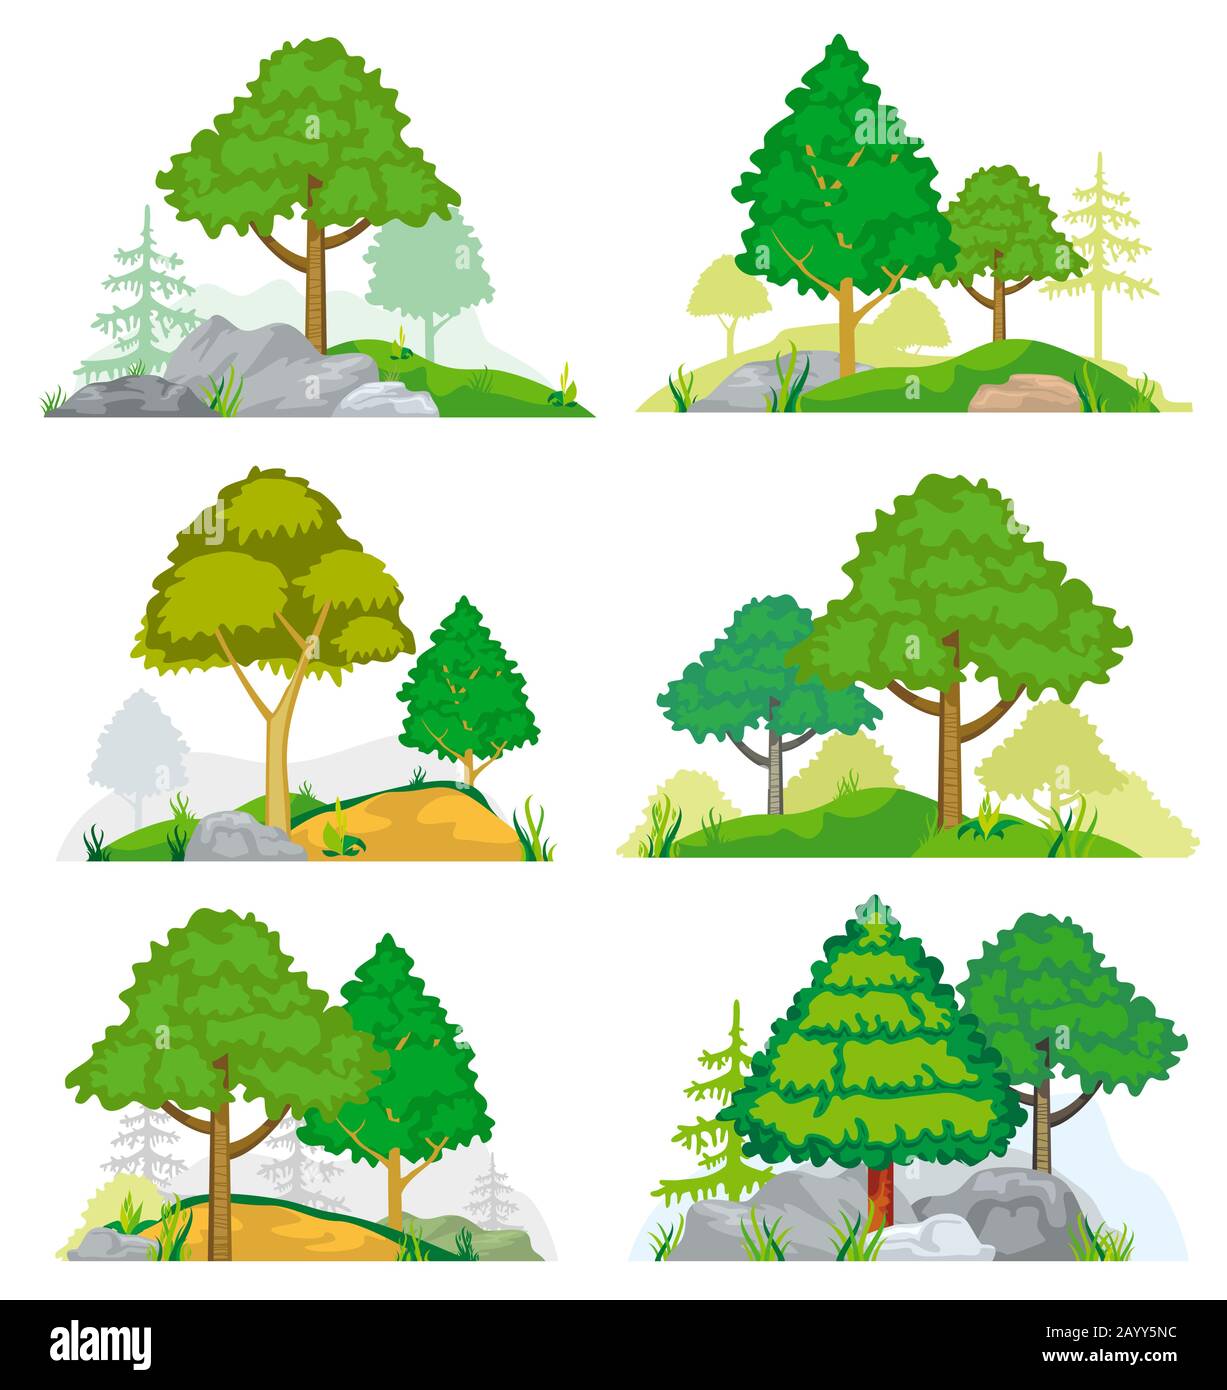 Landschaften mit Nadel- und Laubbäumen, Gras und Felsen. Vektor-Satz Naturlandschaft mit Baum und Felsen, Abbildung Waldbaum-Nadelholz Stock Vektor